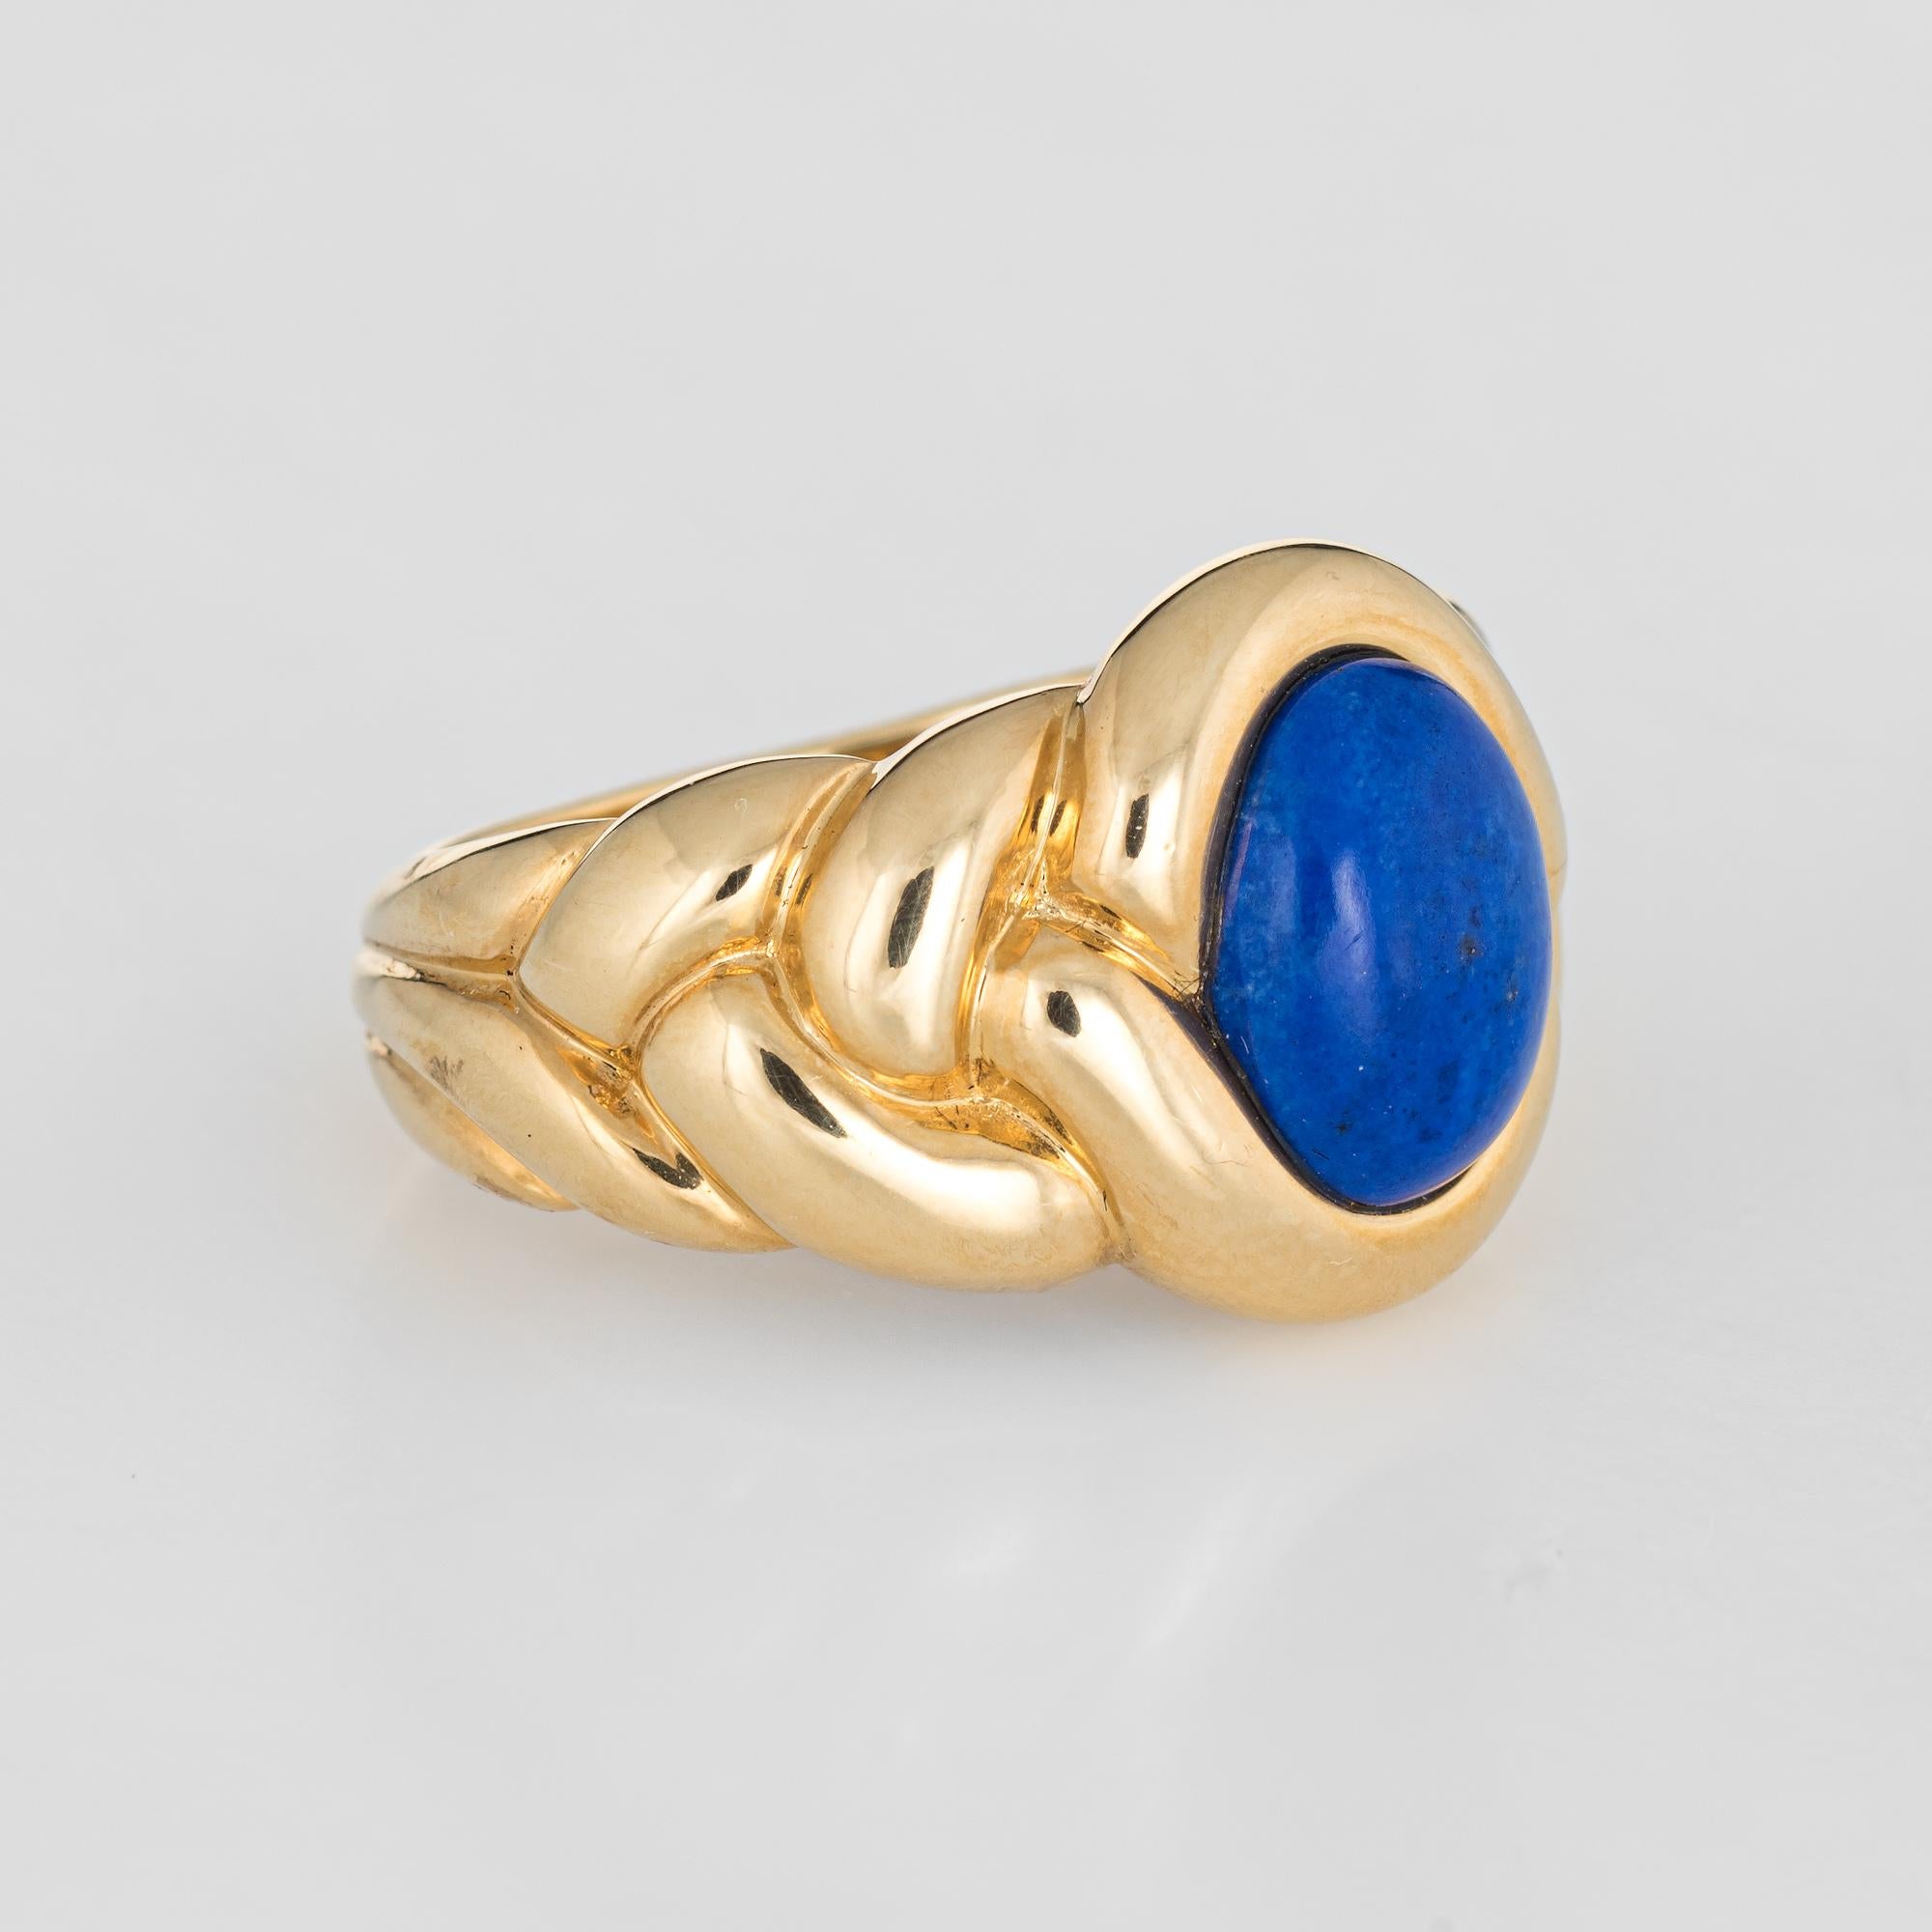 Modern Van Cleef & Arpels Lapis Lazuli Ring Vintage 18 Karat Gold Fine Designer Jewelry